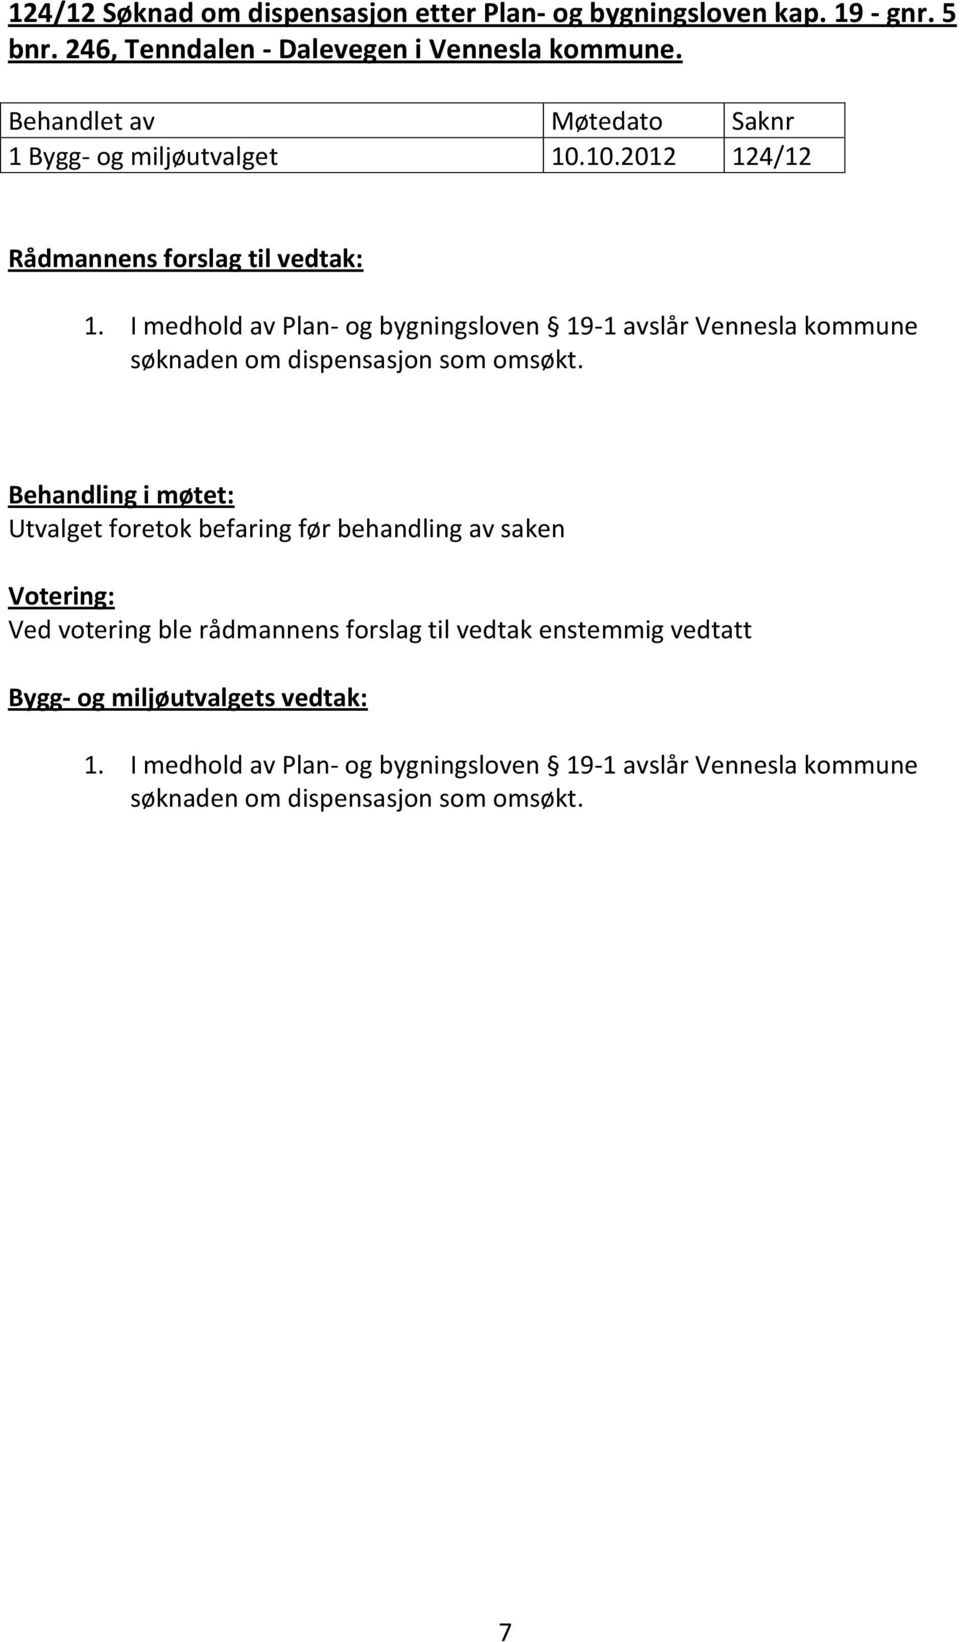 I medhold av Plan- og bygningsloven 19-1 avslår Vennesla kommune søknaden om dispensasjon som omsøkt.